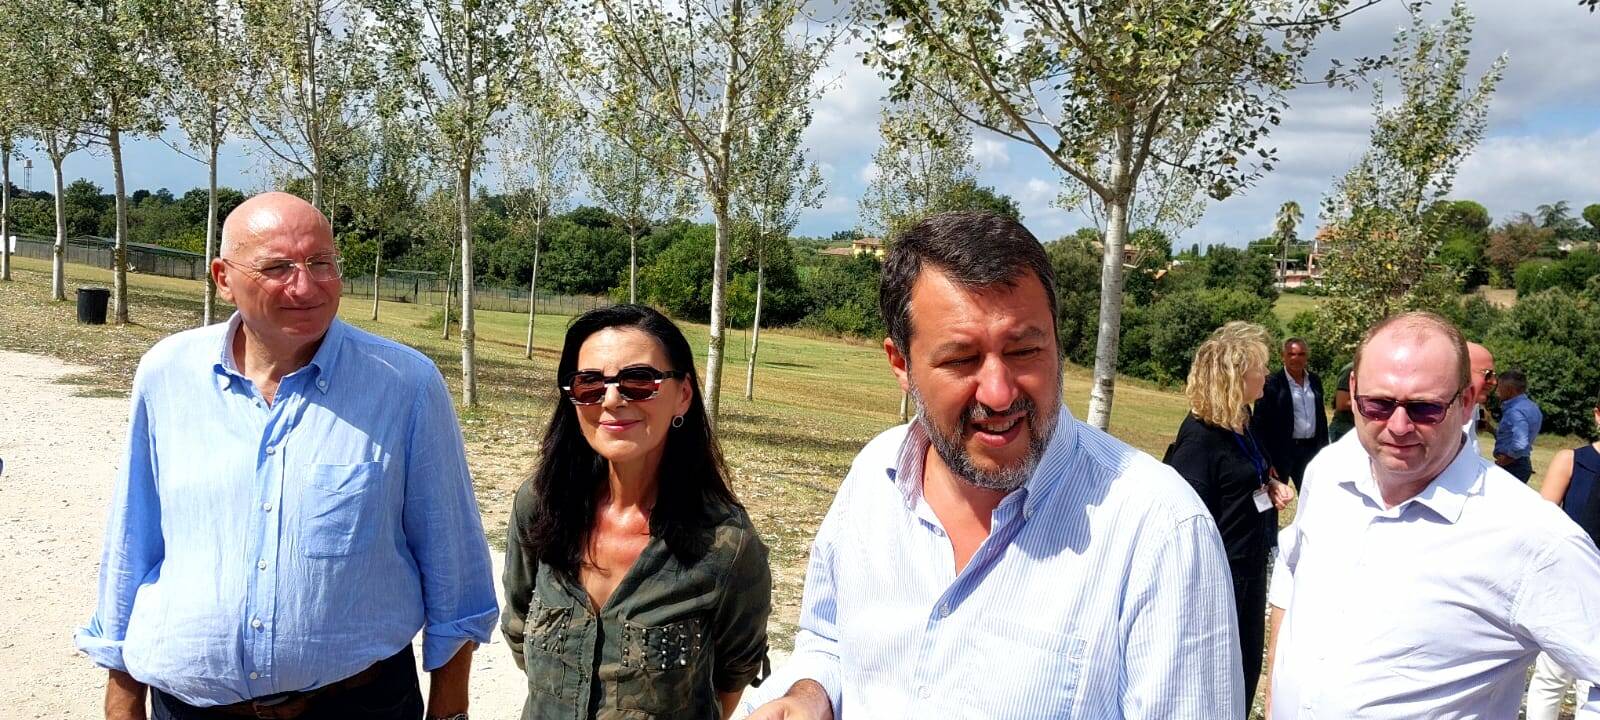 Bonfrisco (Gruppo Id-Lega): “Grazie al Ministro Salvini per aver detto Stop all’abbandono di animali”